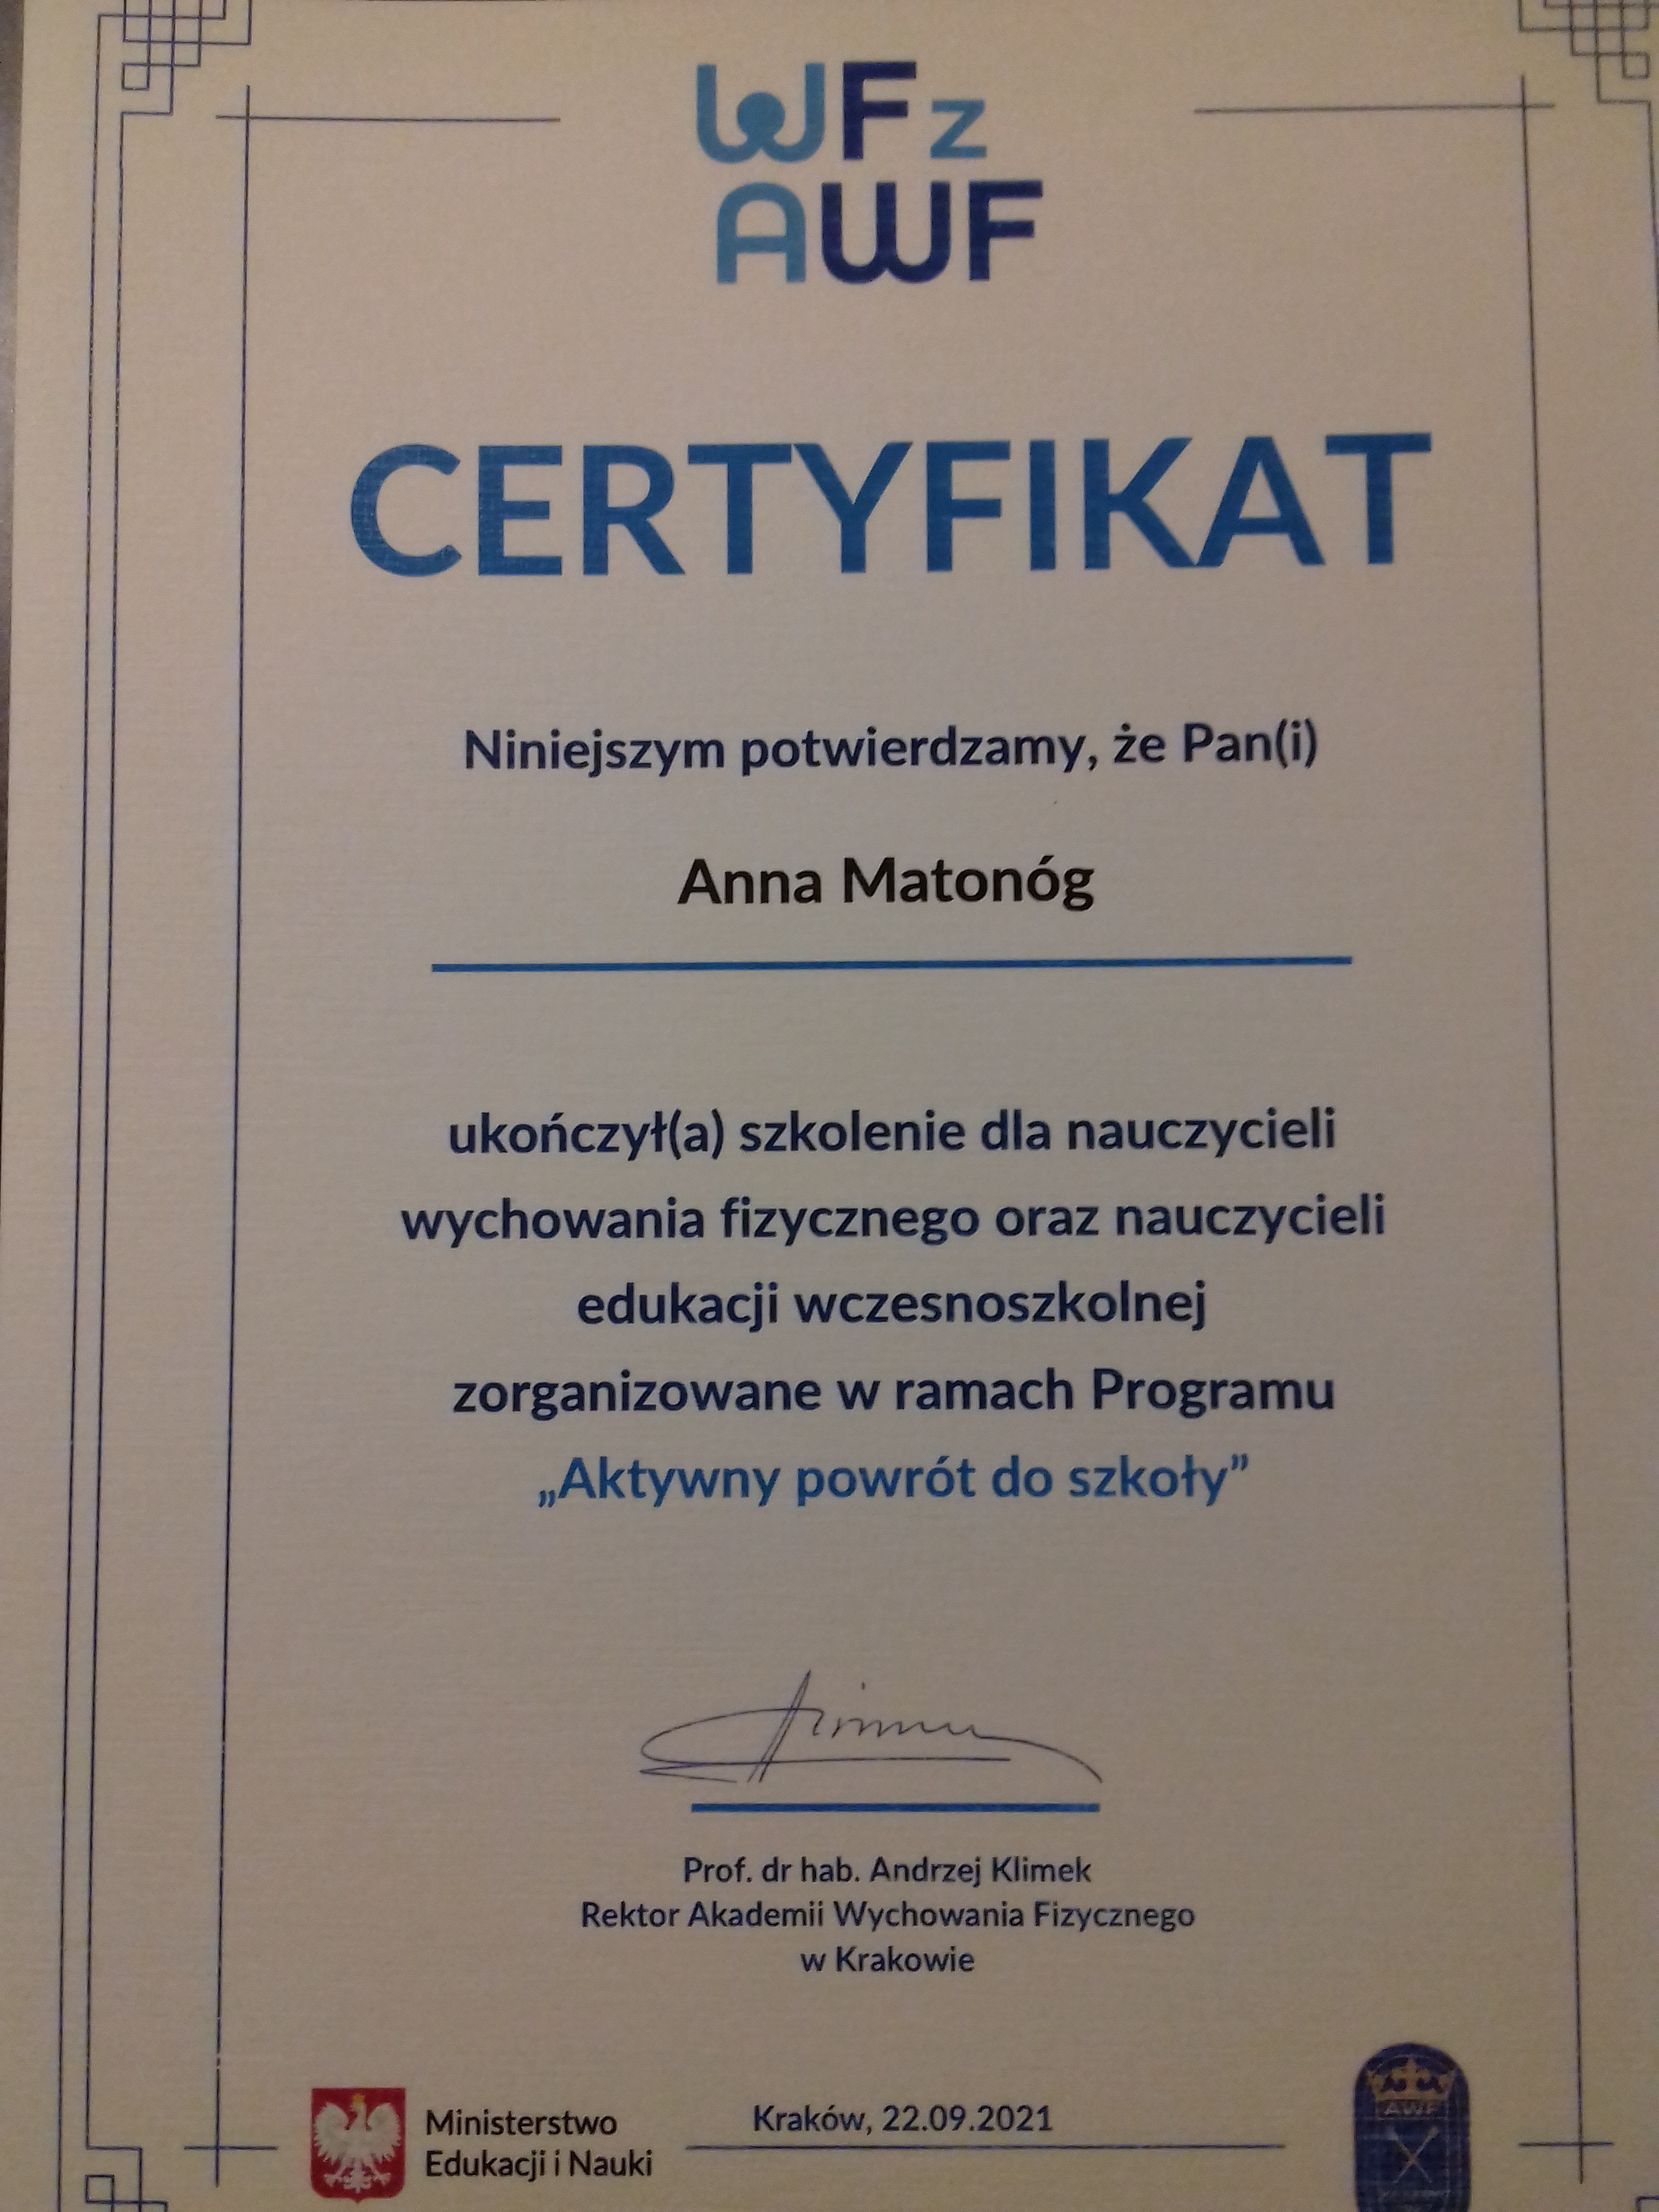 Certyfikat potwierdzający ukończenie szkolenia.